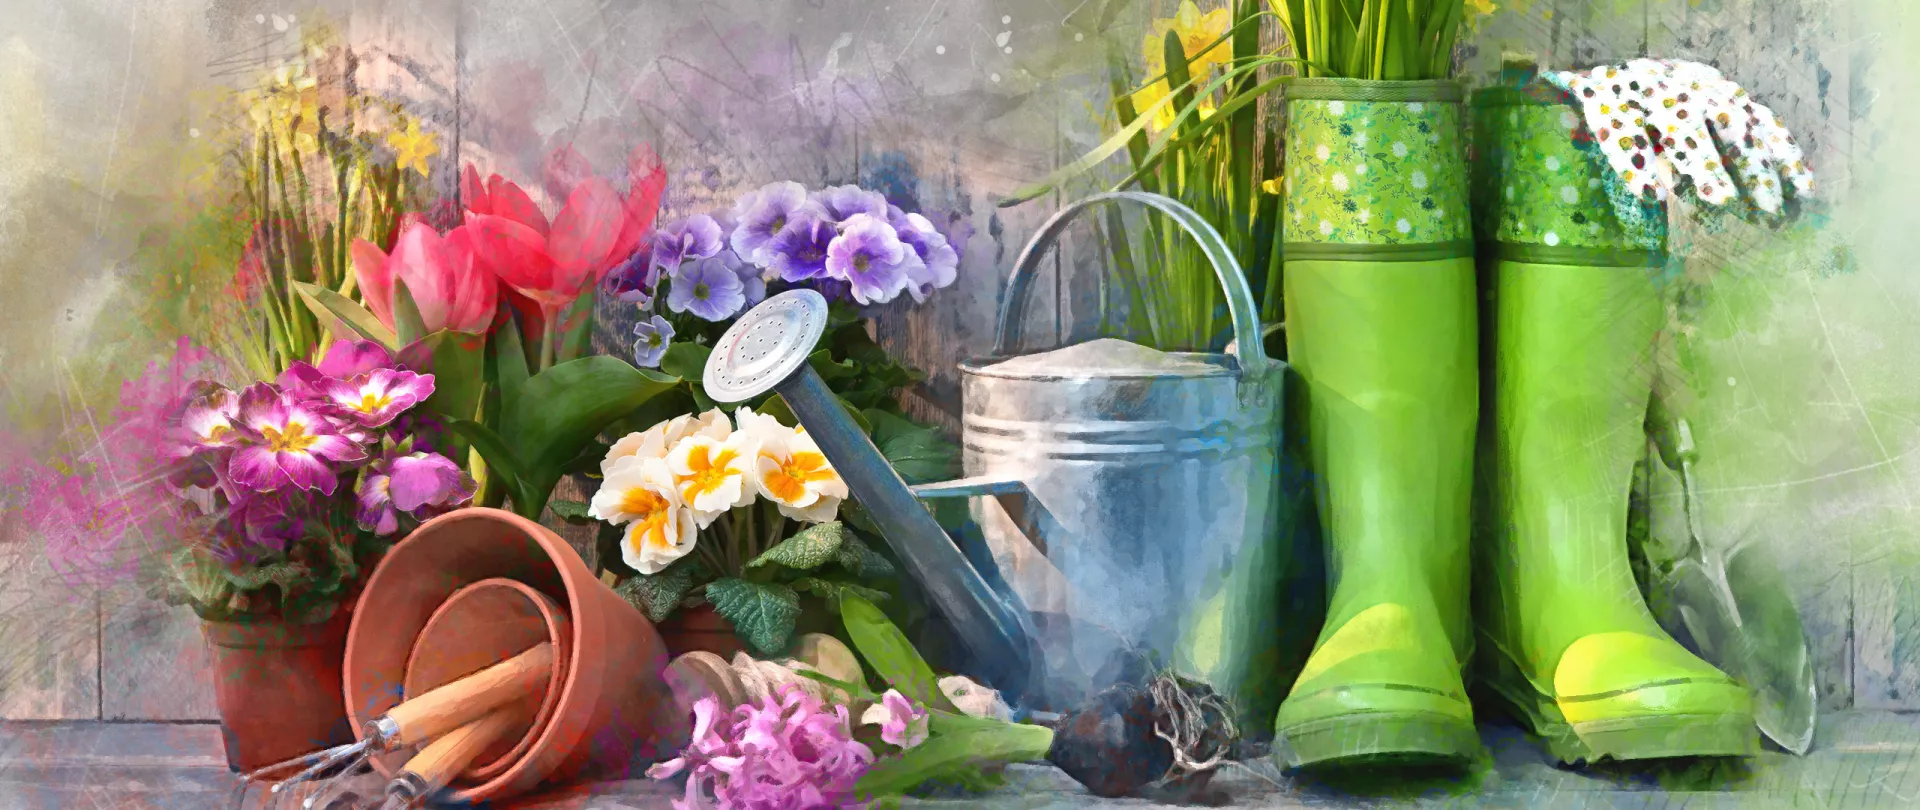 Gummistiefel, Frühlingsblumen und Gartenwerkzeug